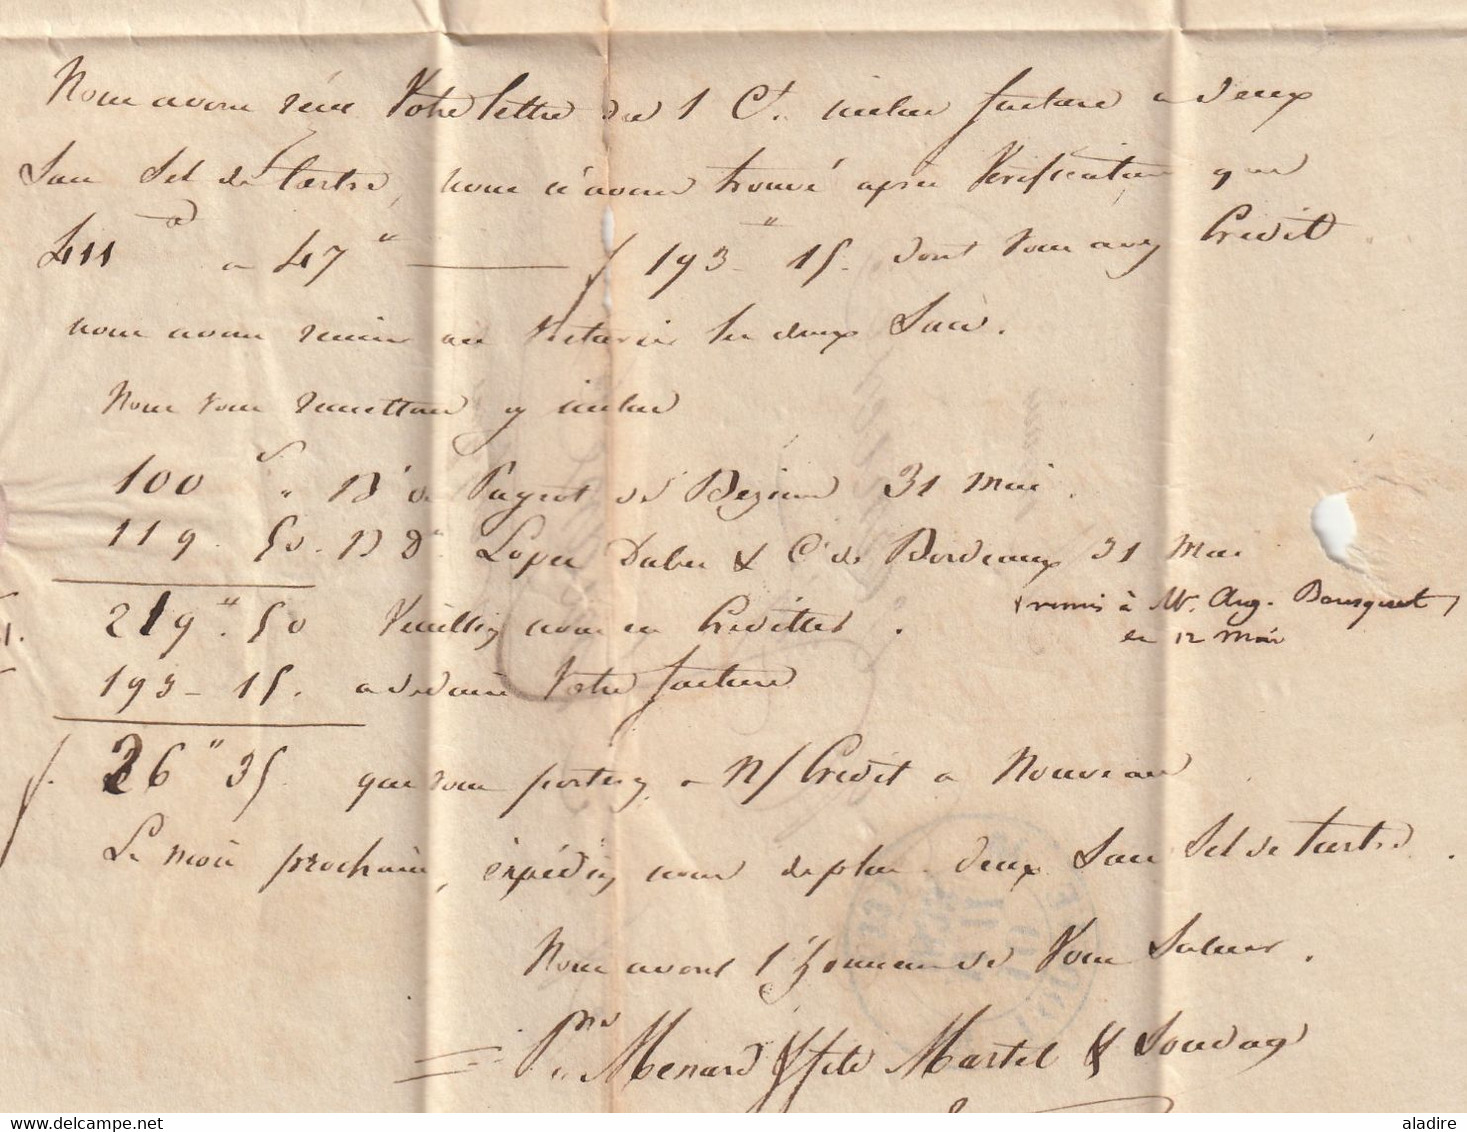 1833 - D4 Grand cachet à date type 12 simple fleuron sur Lettre de LODEVE vers Aniane, Hérault - décime rural